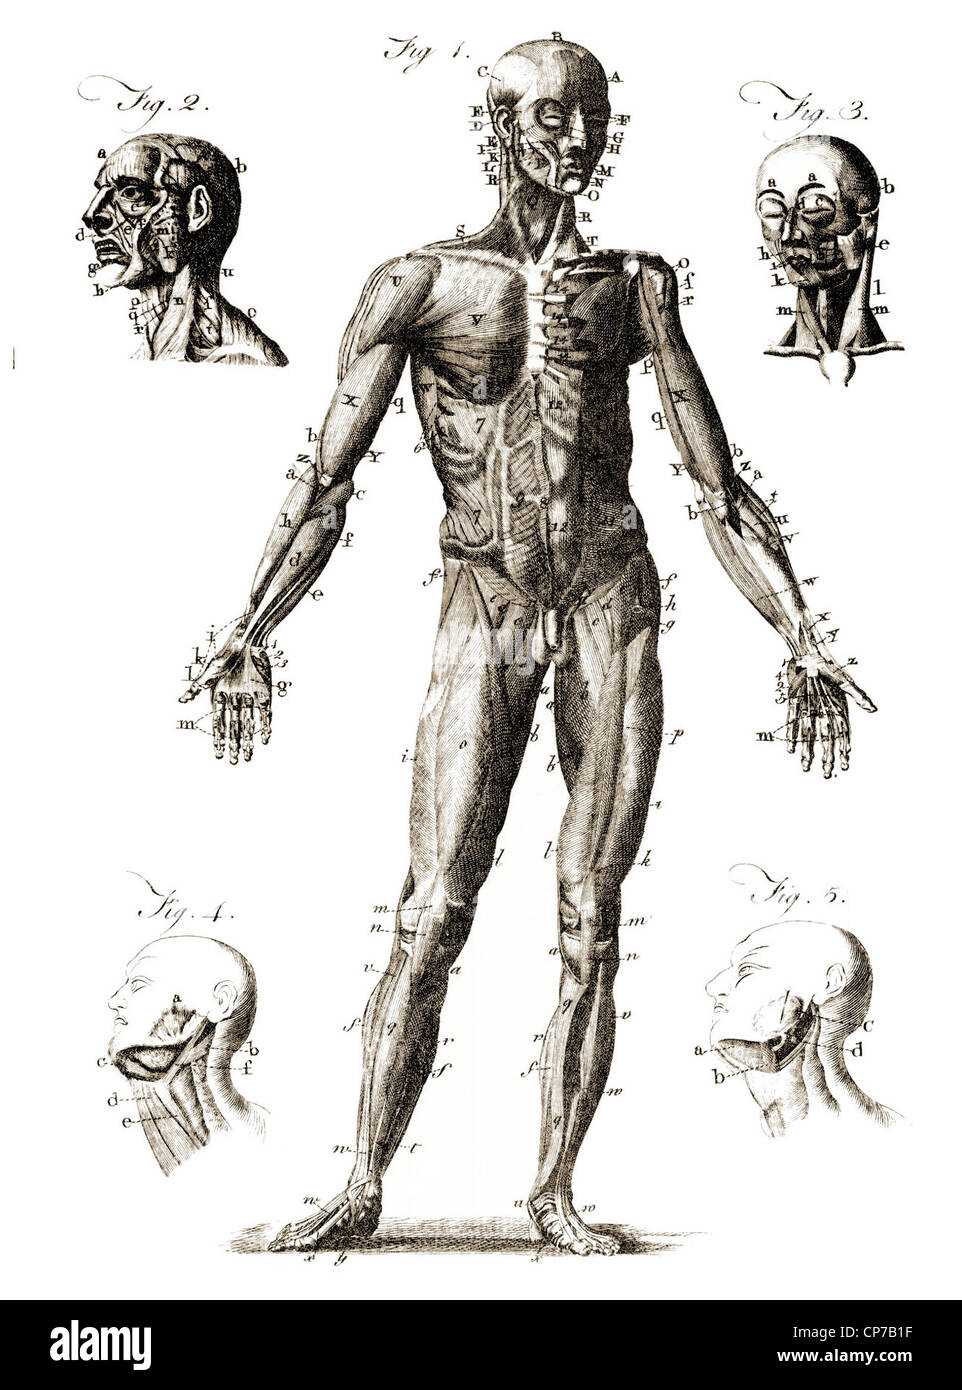 Schéma de l'étiquette l'anatomie humaine. Publié par Graveur inconnu dans l'Encyclopédie Britannique, 1771. Banque D'Images